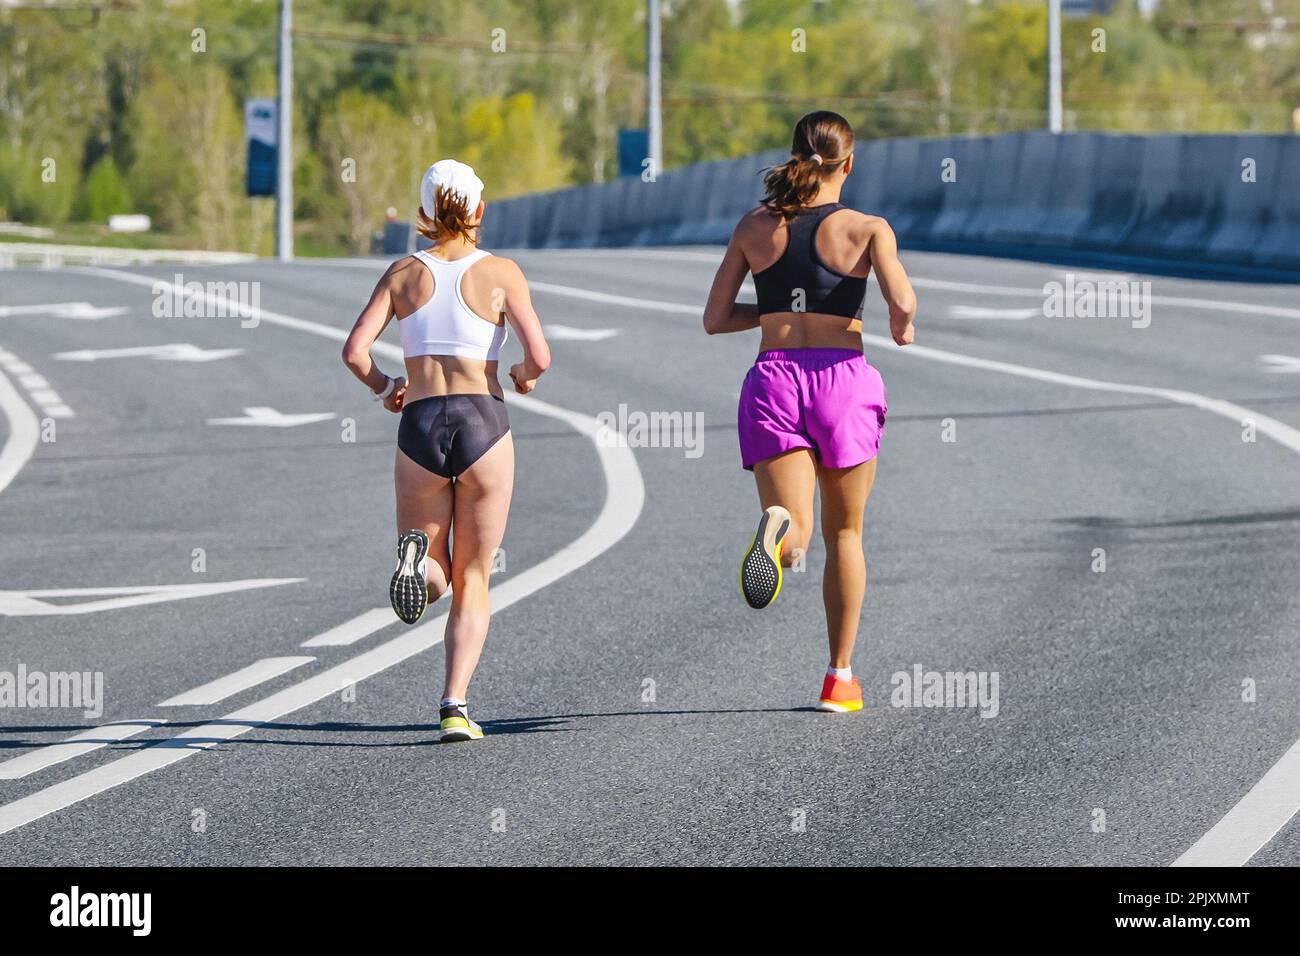 Zurück zwei Läuferinnen, die beim Overpass-Marathonrennen laufen, Ausdauersportwettbewerb, Joggingsportlerin Stockfoto